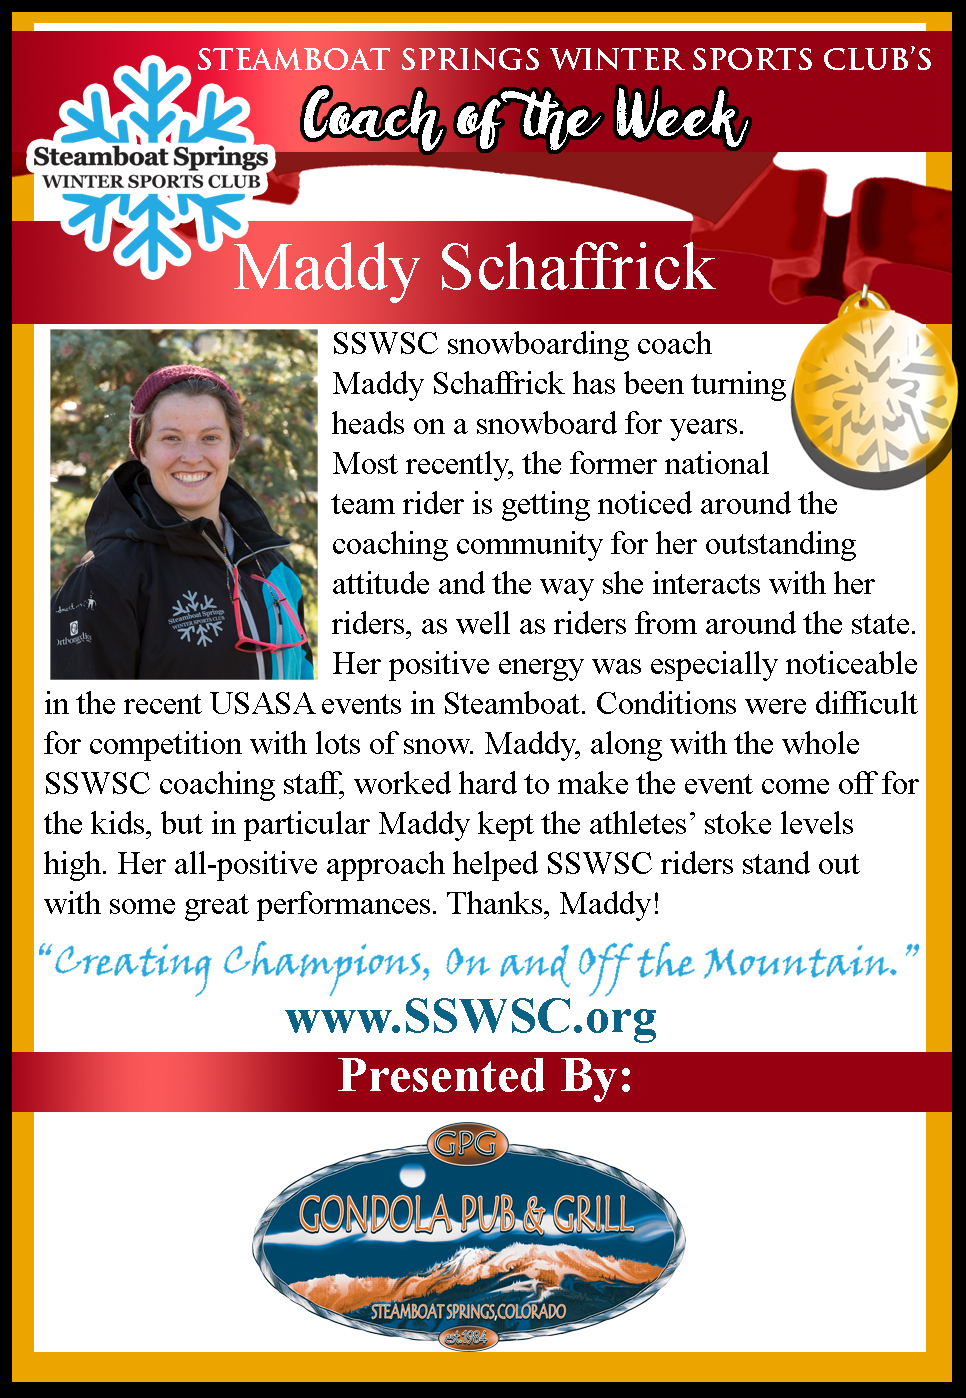 Coach of the Week, Maddie Schaffrick